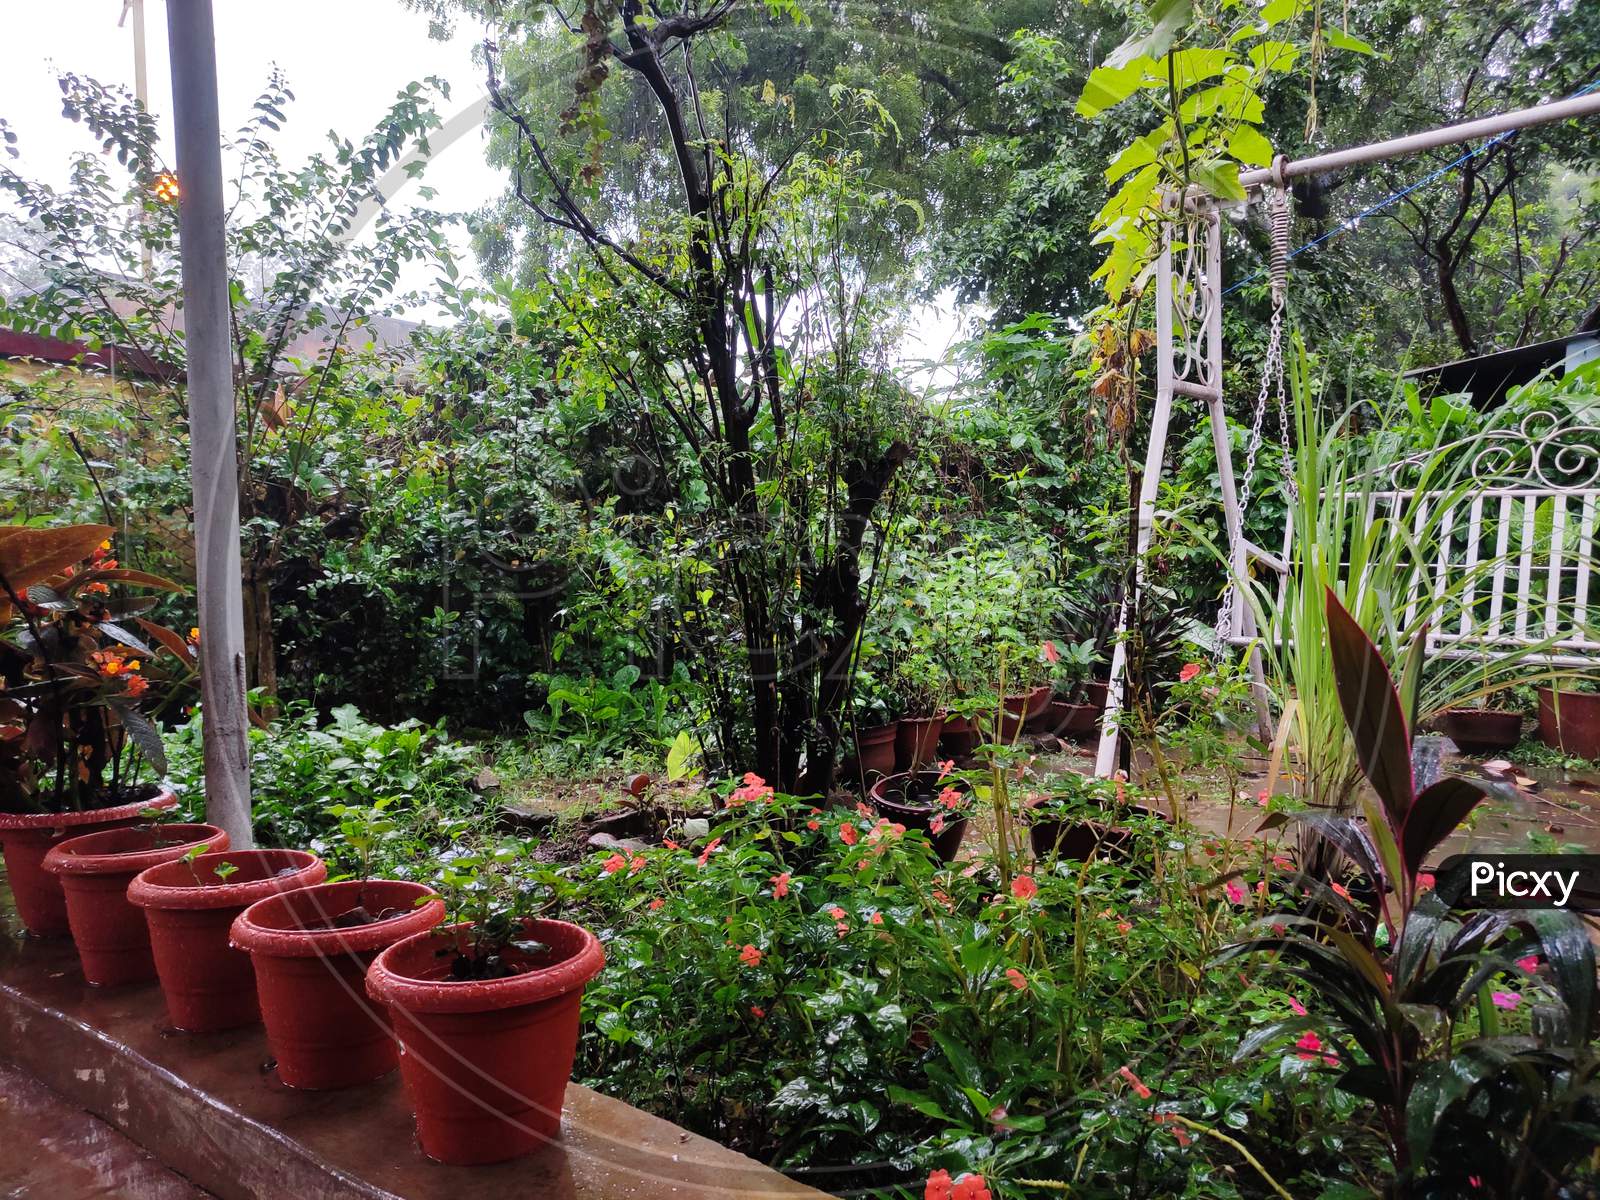 A home garden